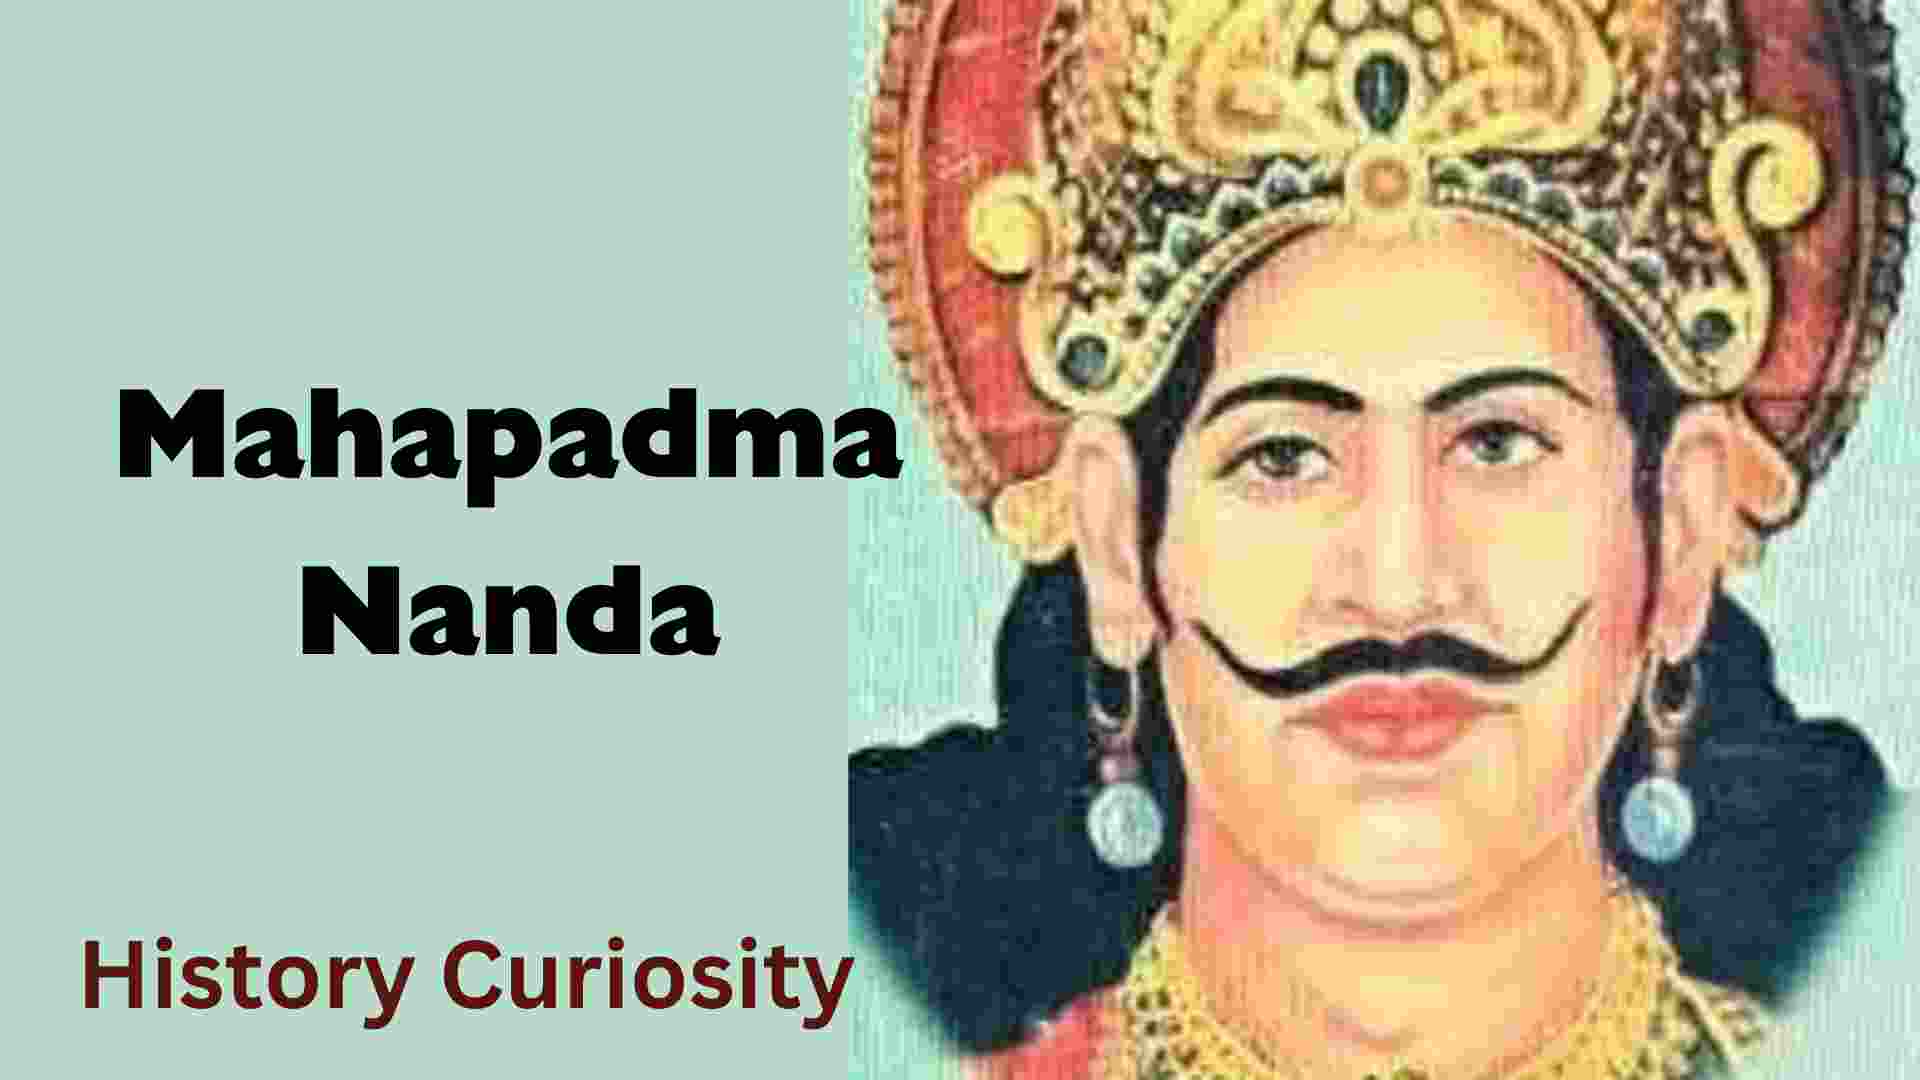 Mahapadma Nanda